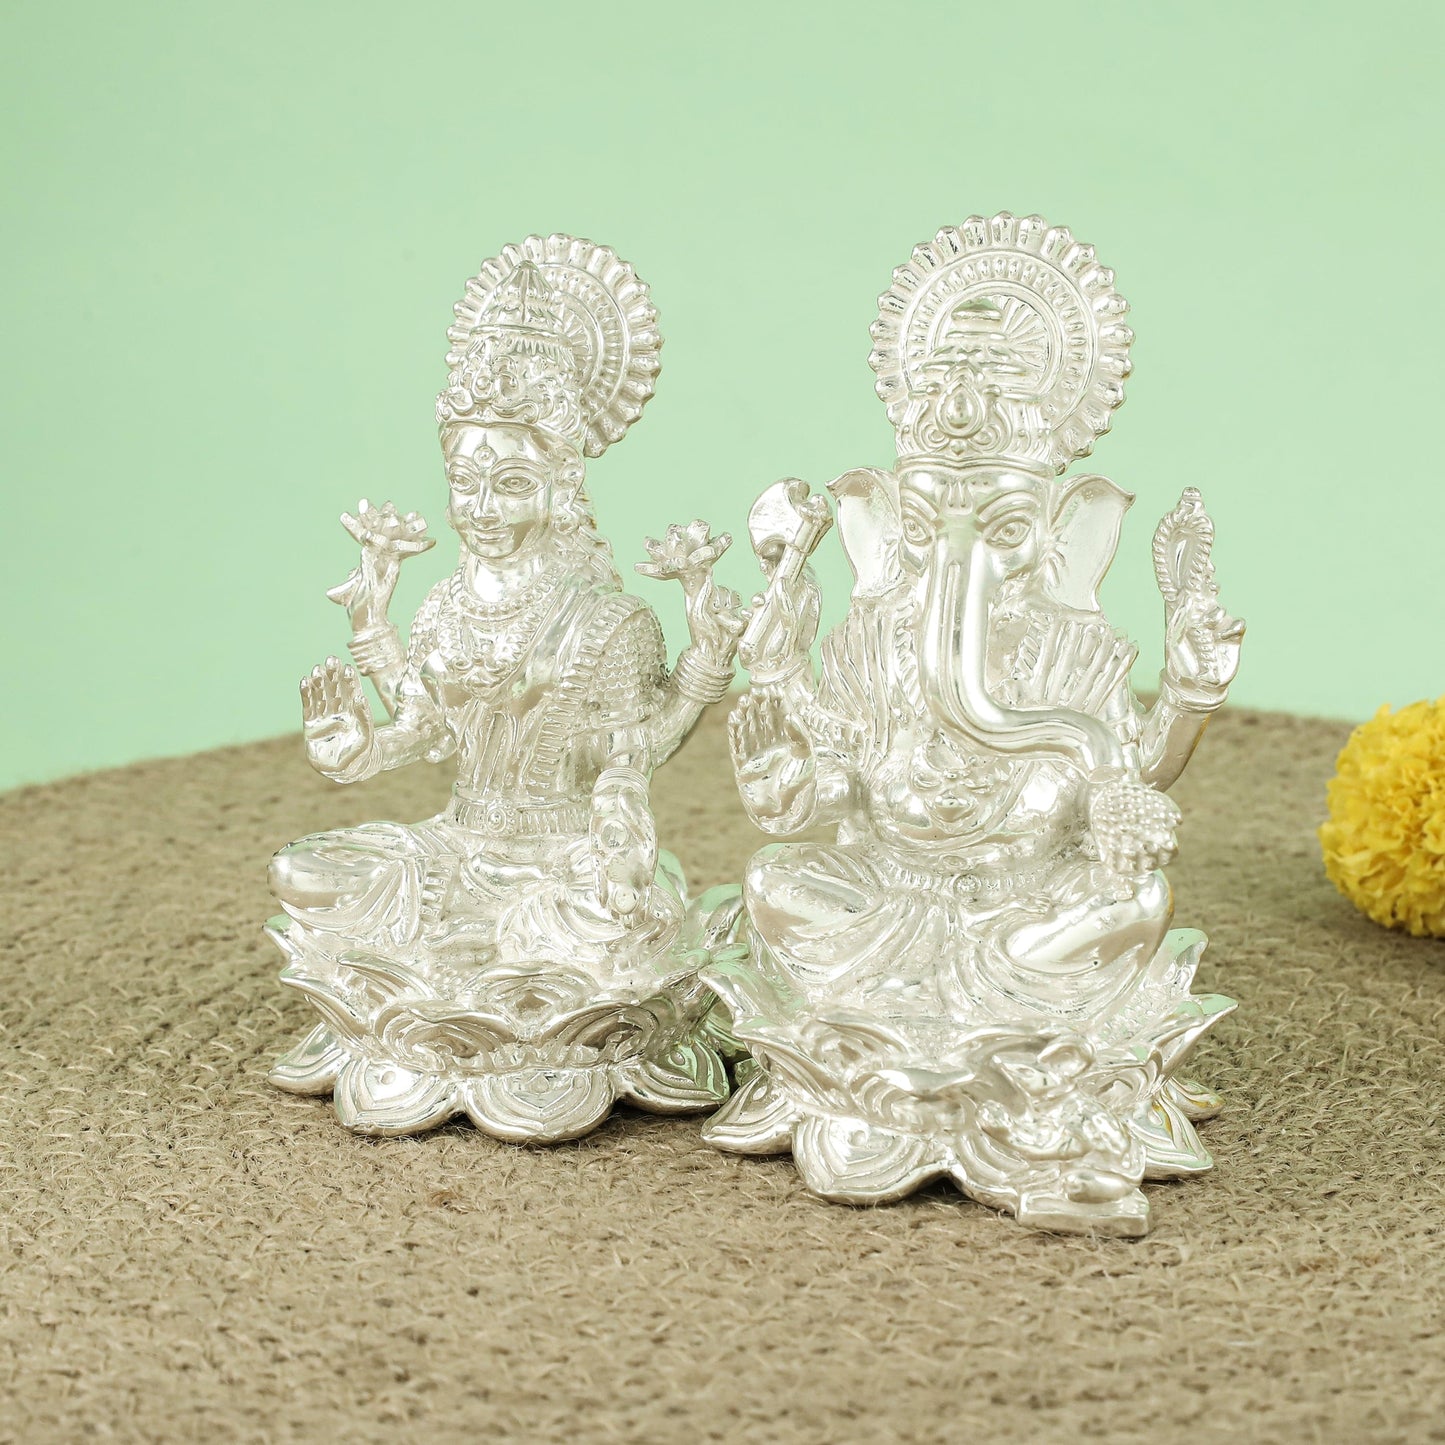 Classy Silver Lakshmi Ganesh Idol